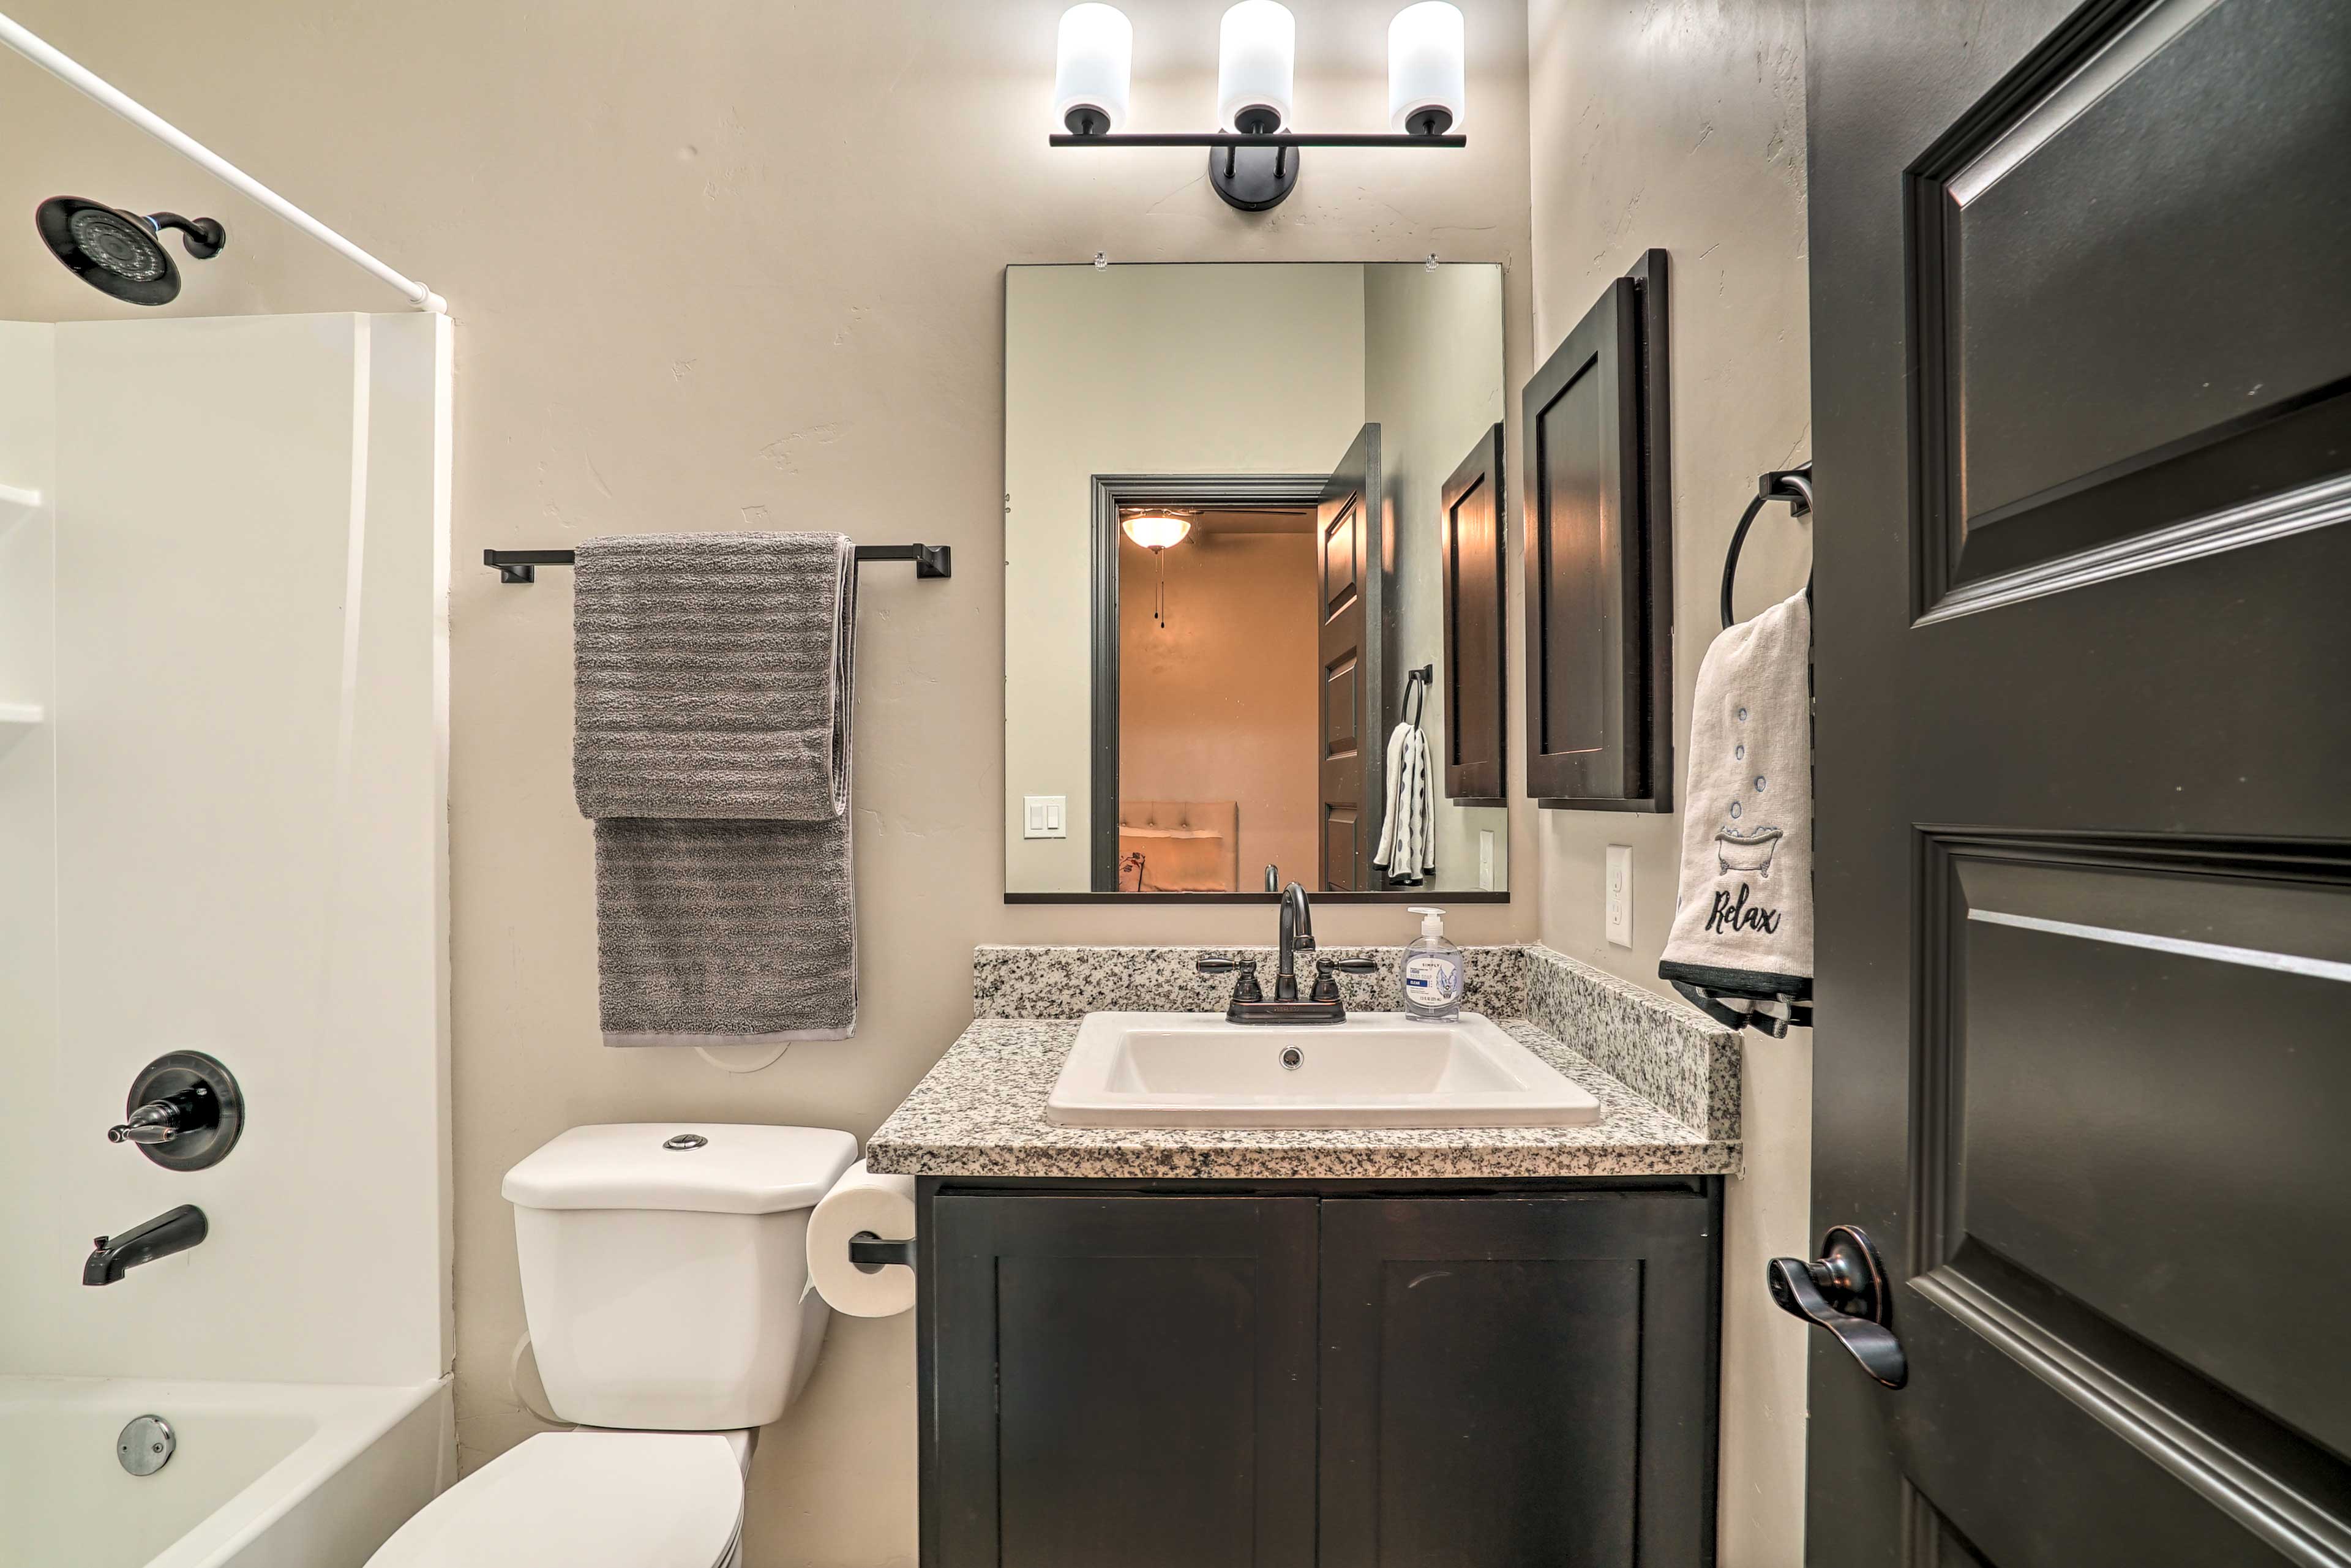 En-Suite Bathroom | Complimentary Toiletries | Hair Dryers | Towels Provided